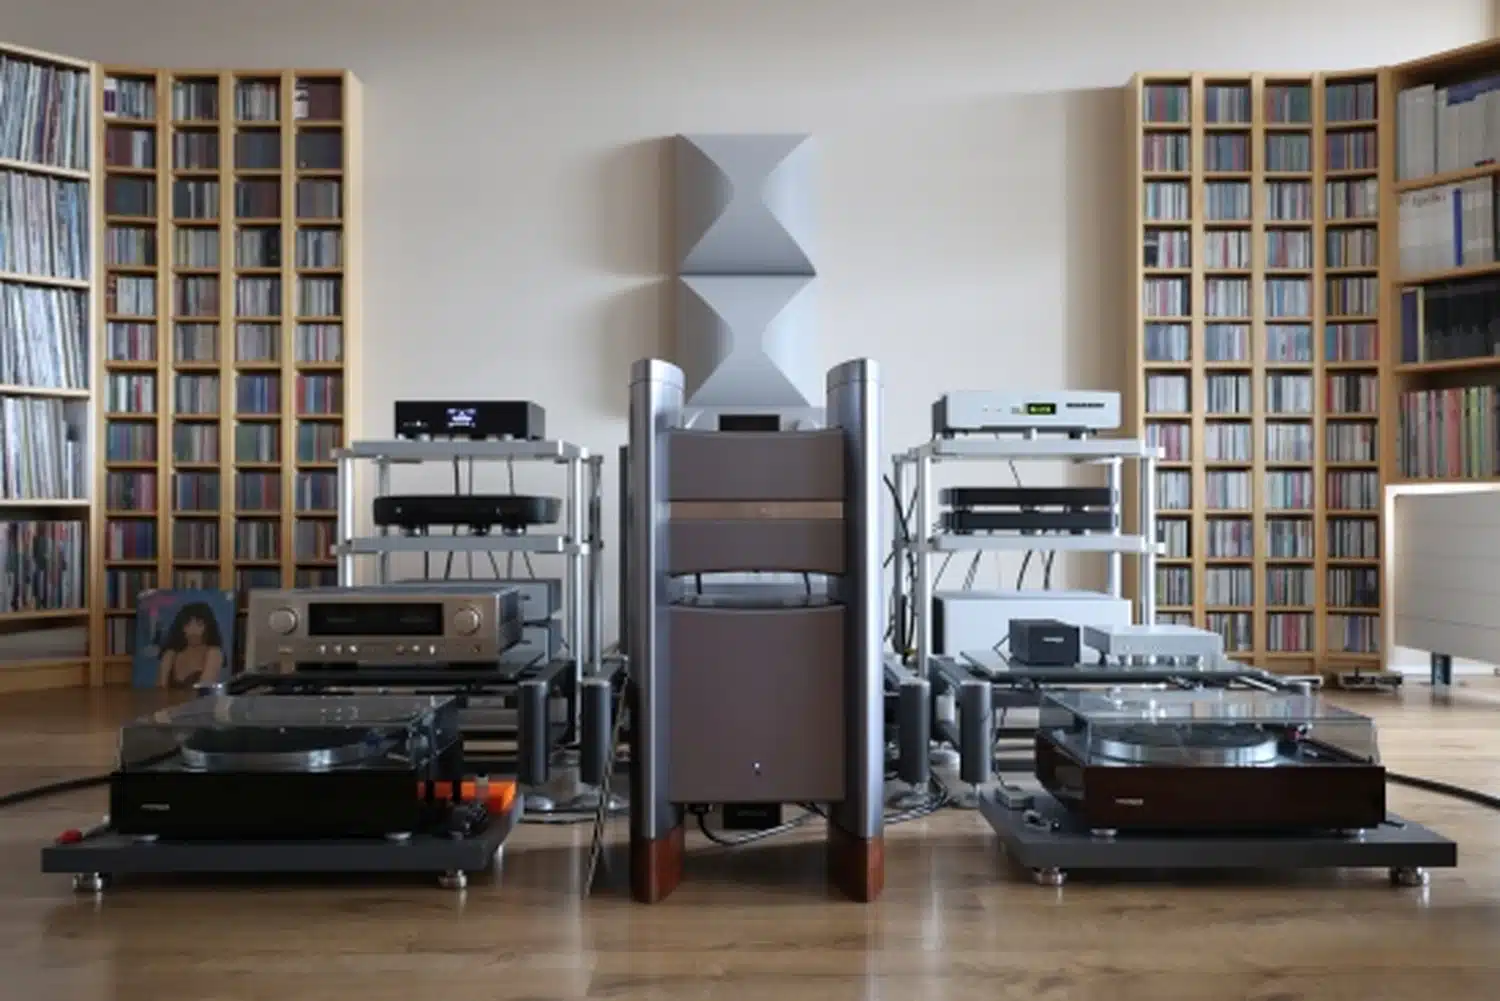 Une salle audio haut de gamme comprenant plusieurs systèmes audio dont l'amplificateur Halcrp Eclipse stéréo, des platines vinyle et avec de grandes étagères de disques vinyles et de CD (par 1877.audio)